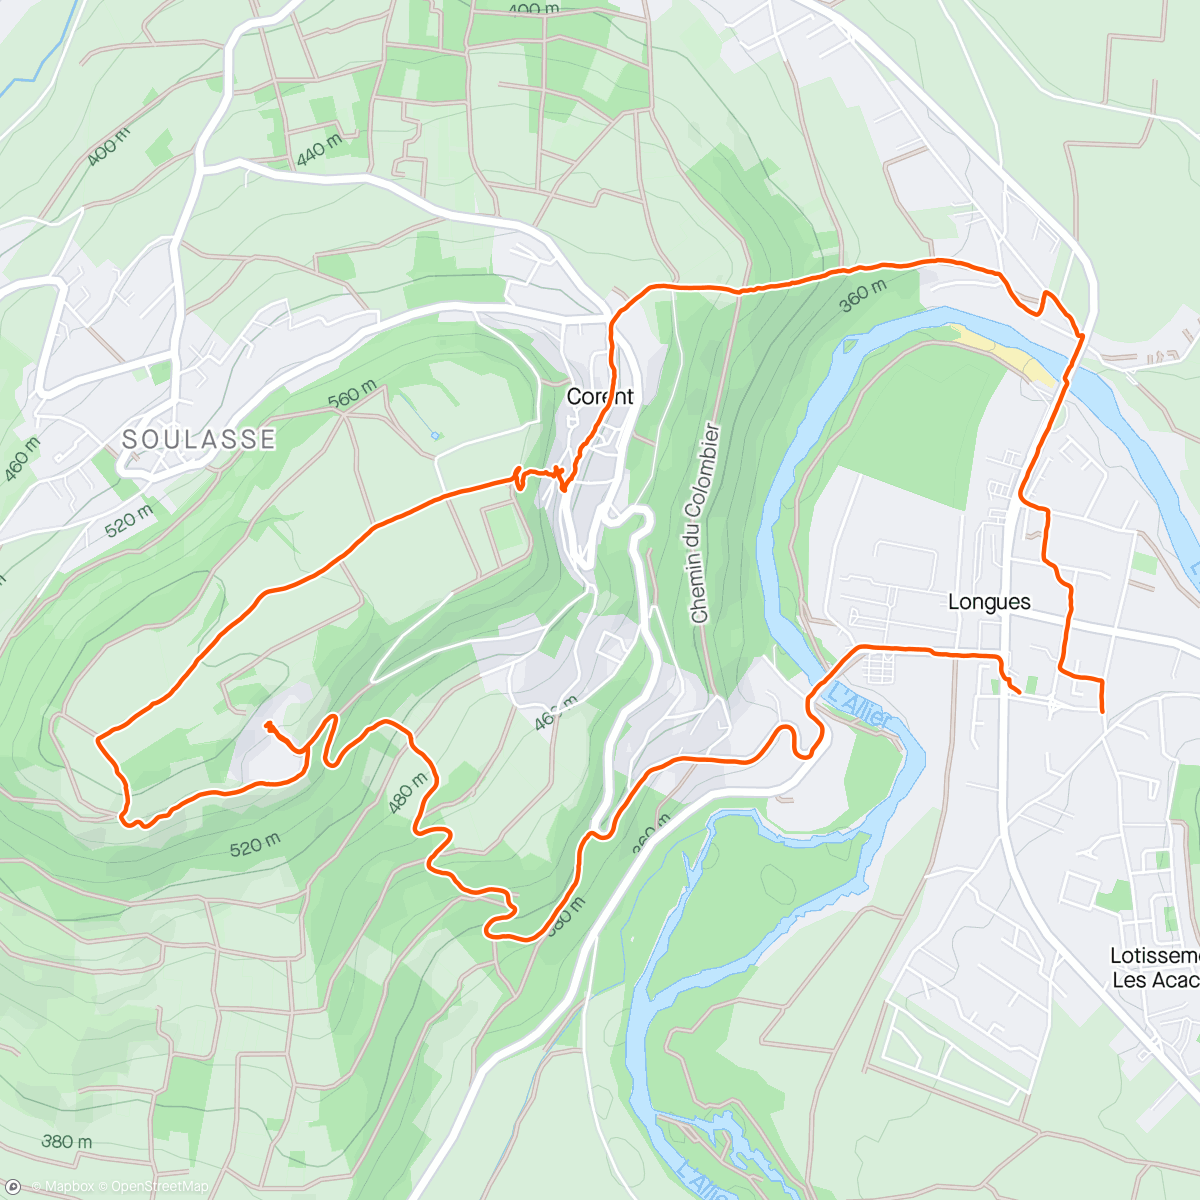 Map of the activity, Randonnée Corent